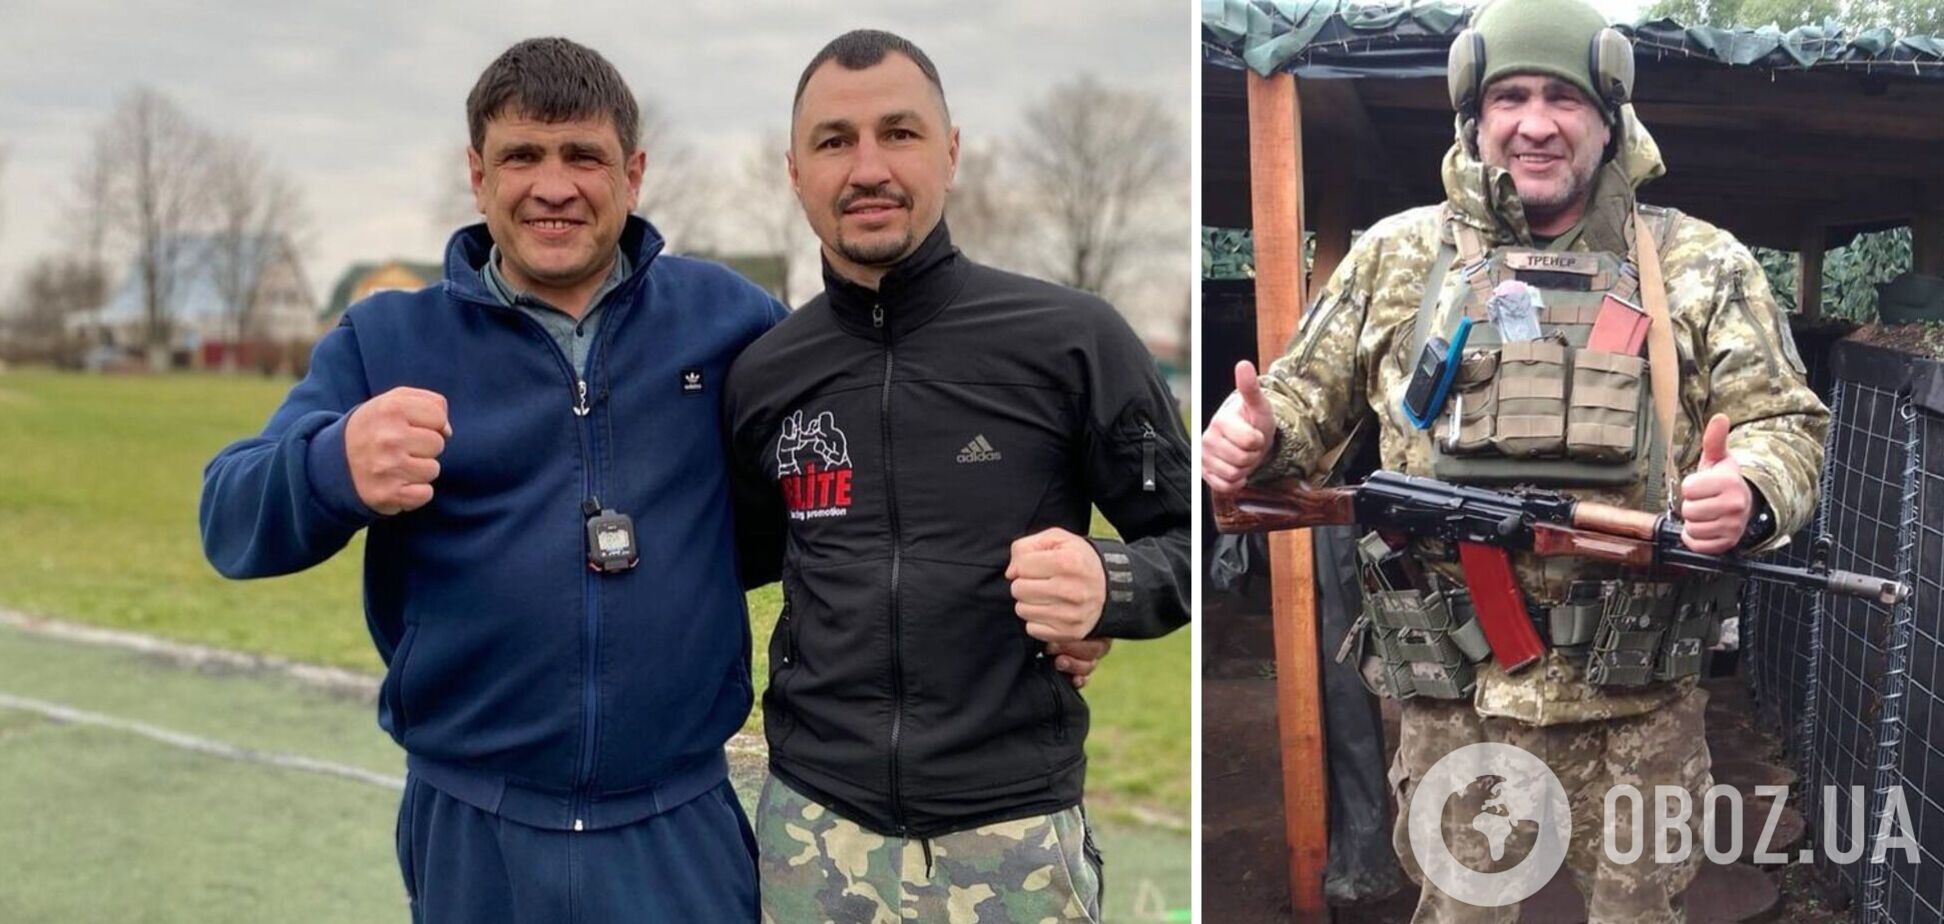 'Три тижні реанімації': перший тренер українського чемпіона світу з боксу дістав важке поранення